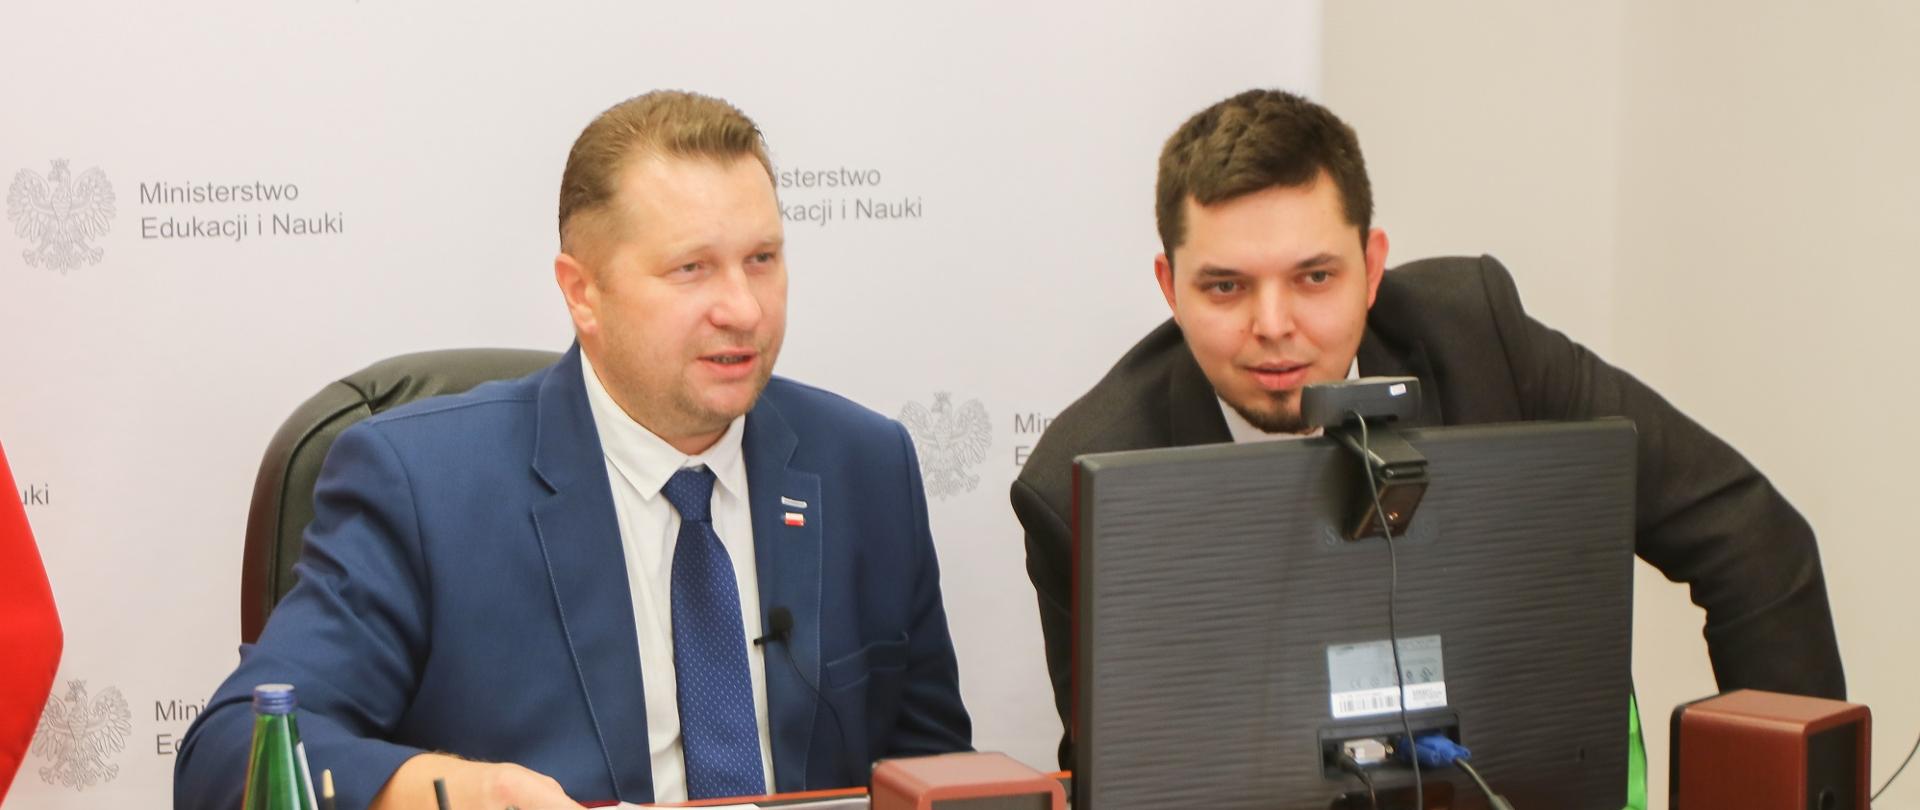 Minister Czarnek i mężczyzna w garniturze siedzą przed monitorem i rozmawiają.